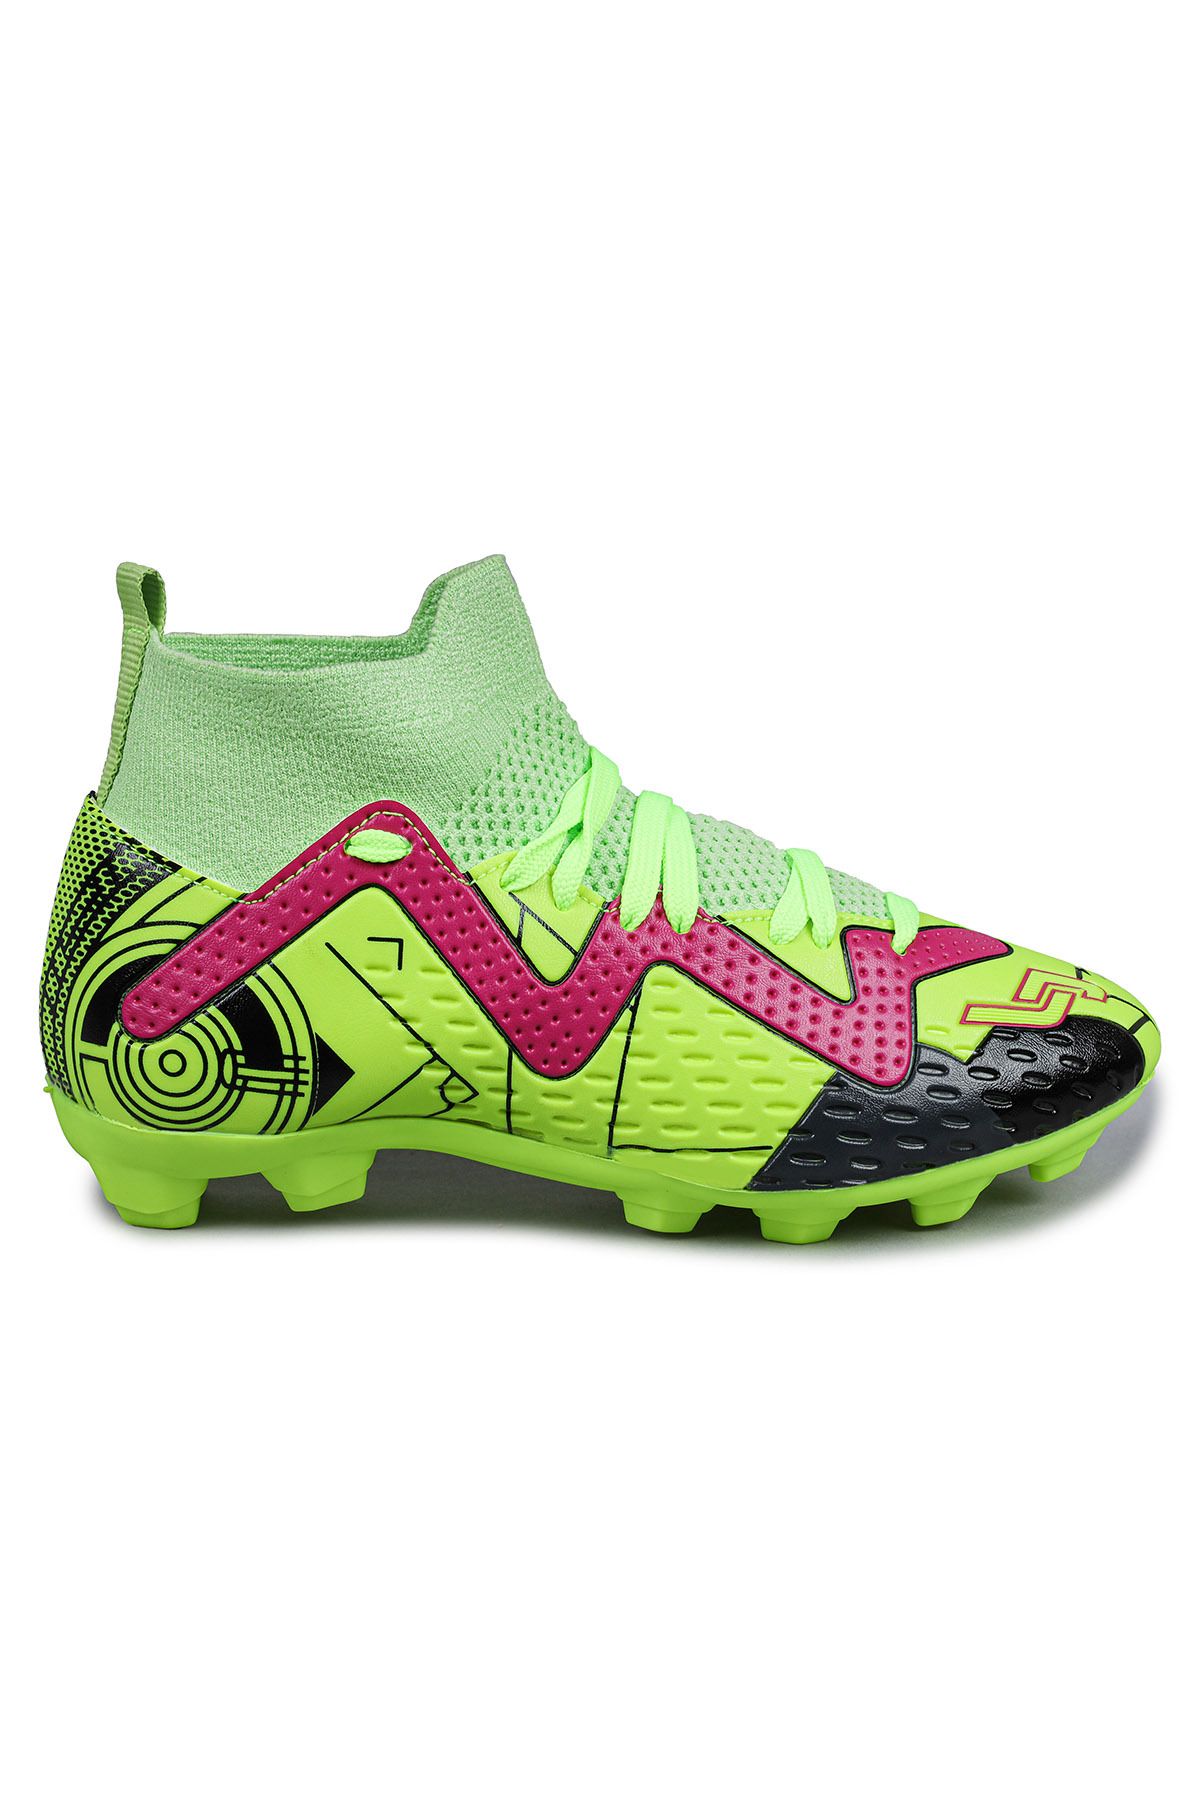 Jump 30226 Sarı - Yeşil - Kırmızı Çoraplı Çim - Halı Saha Krampon Futbol Ayakkabısı